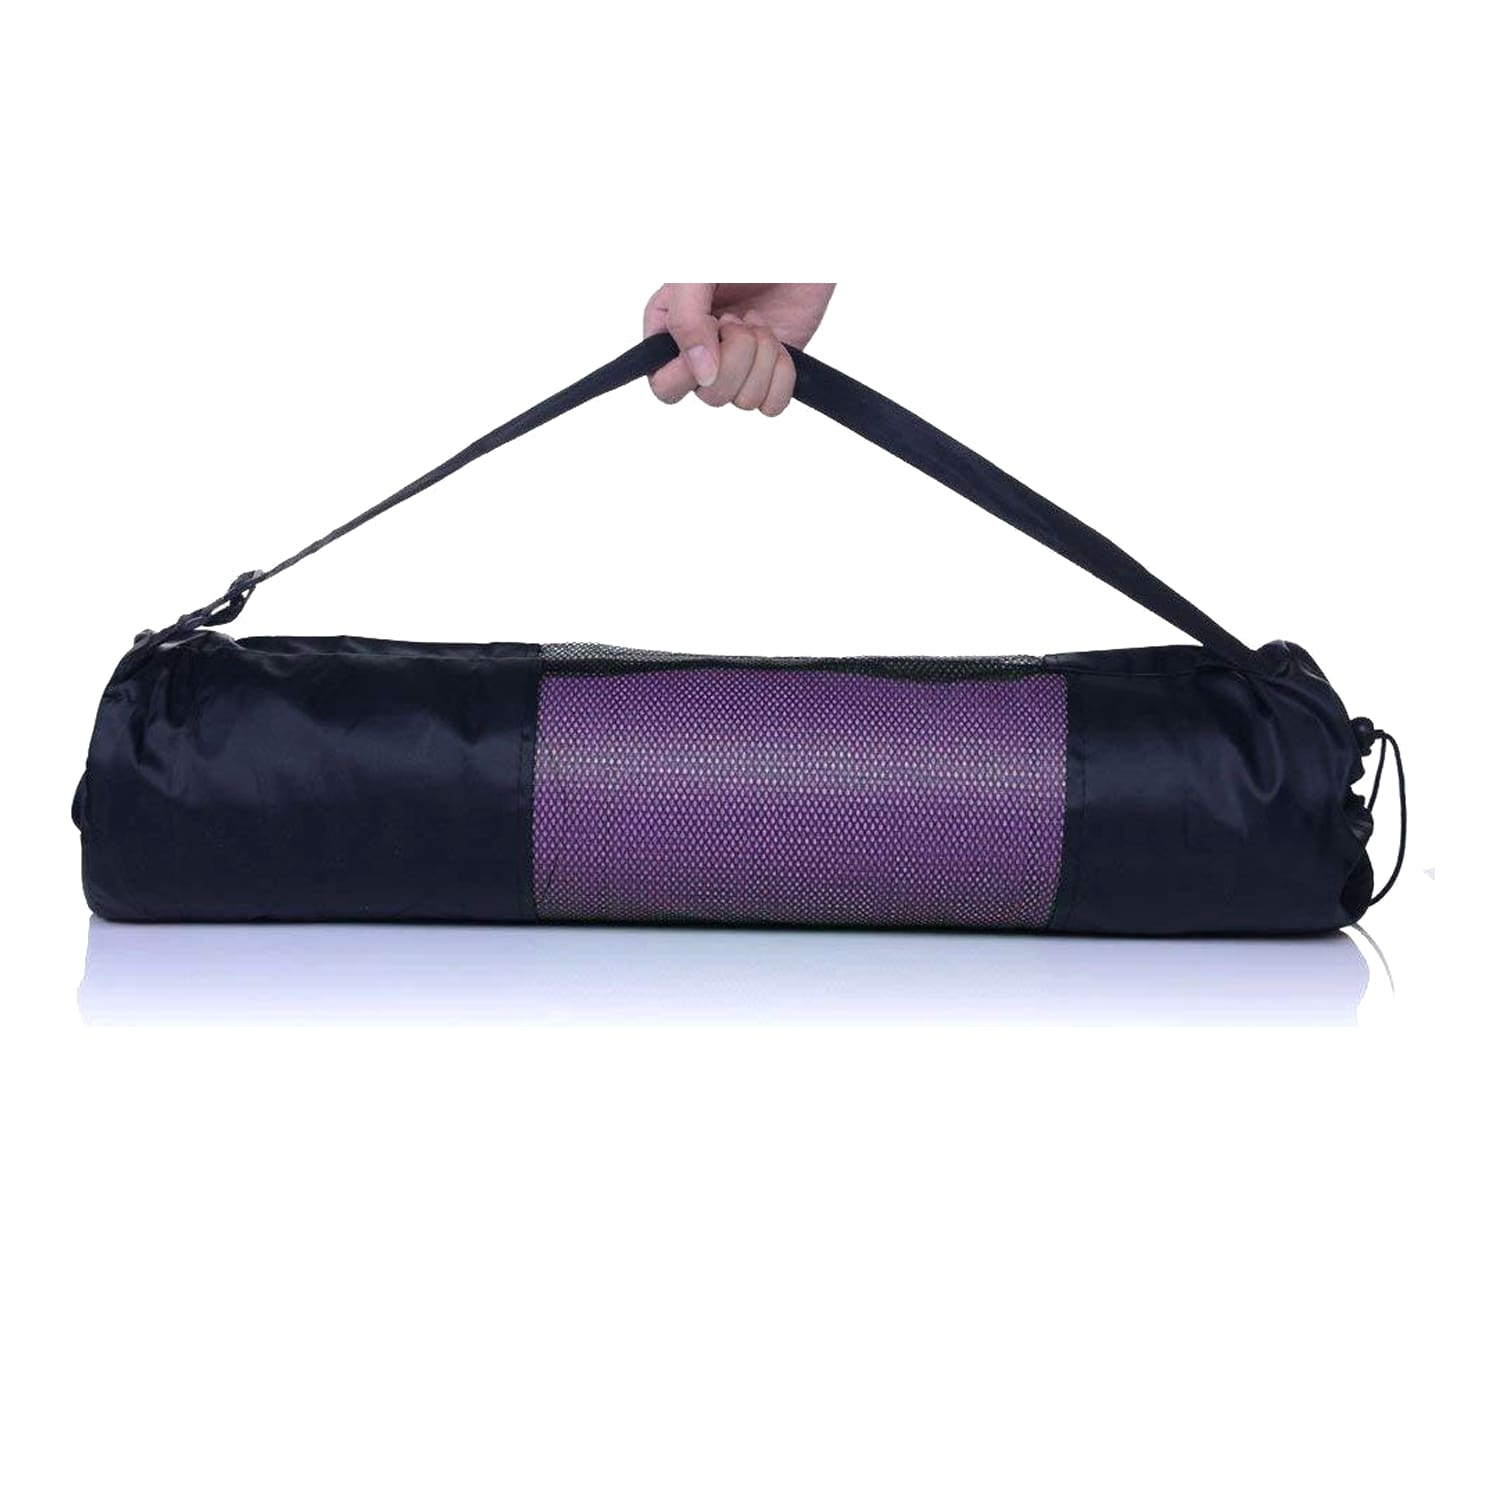 Colchoneta Mat de Yoga Pilates 6mm Rosado - Promart